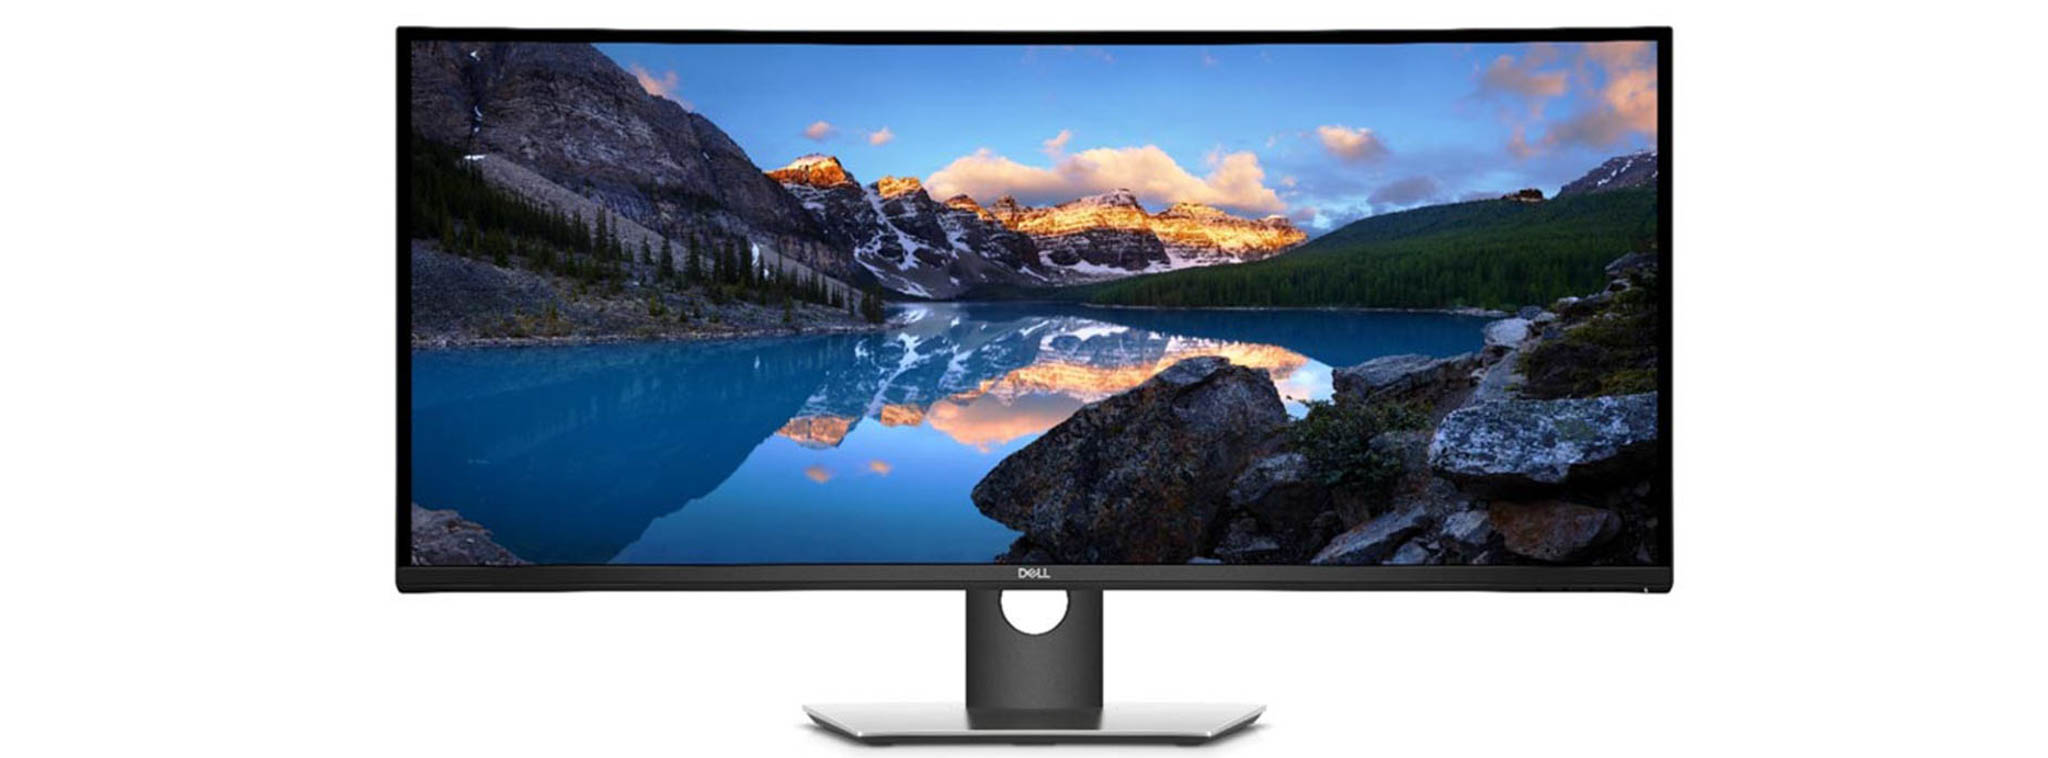 Dell ra mắt U3818DW: Màn hình cong 38 inch tỉ lệ 24:10, tích hợp USB-C, 1300 USD